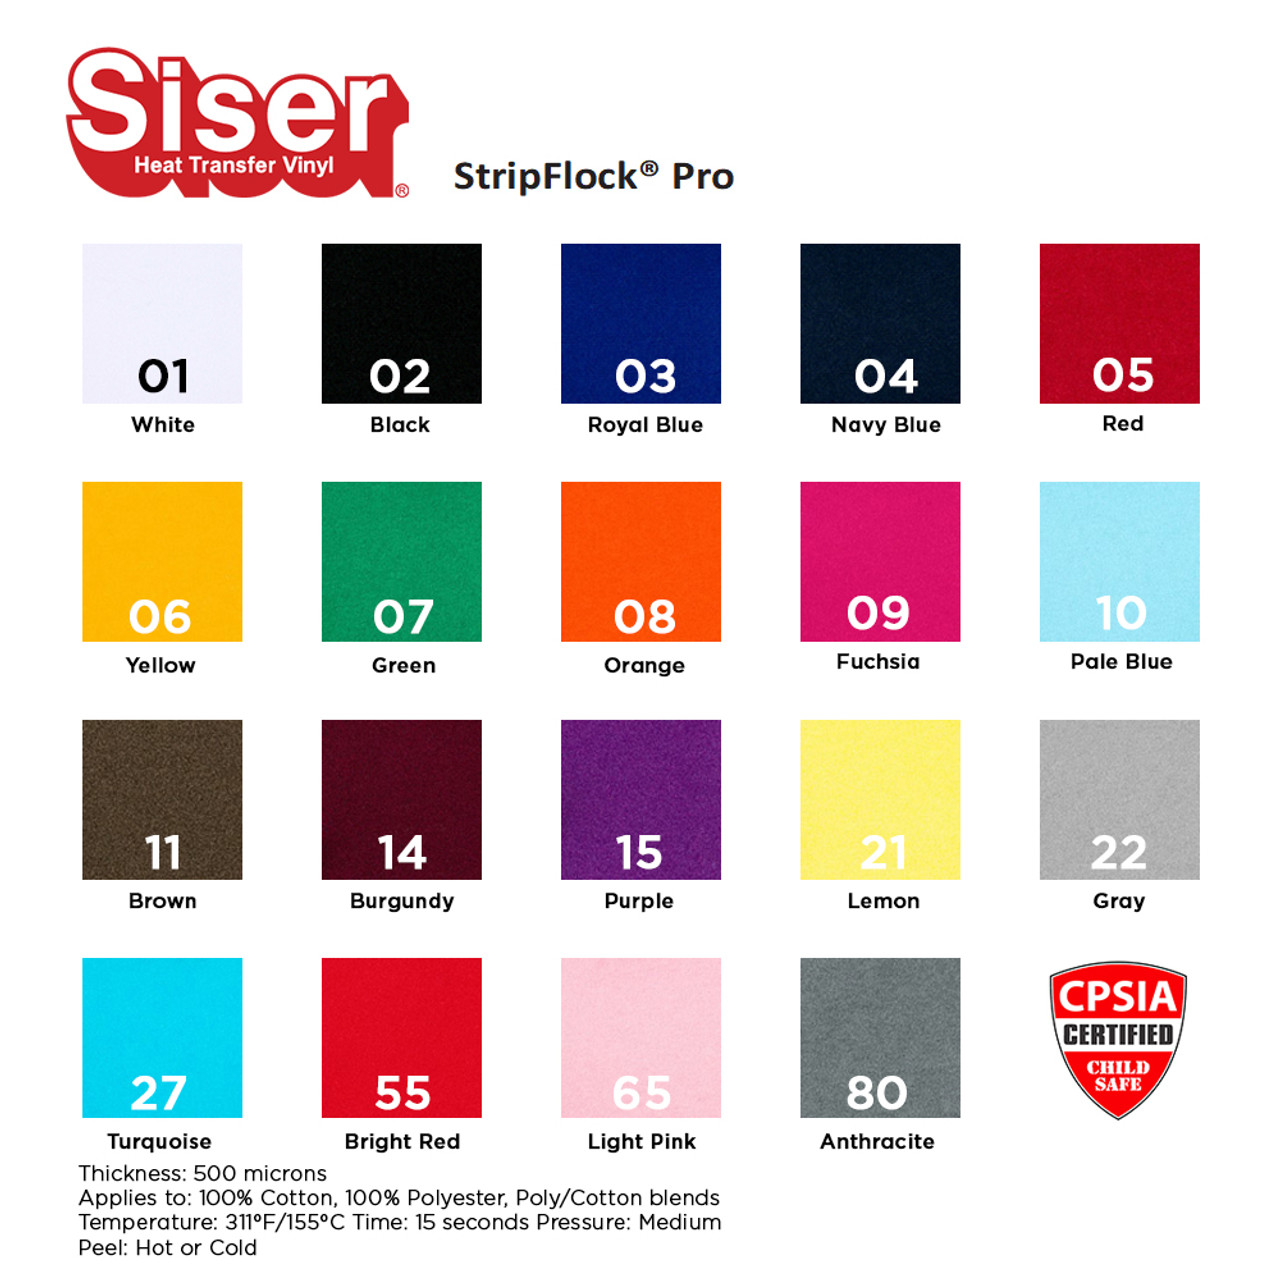 15 Siser StripFlock Pro Heat Transfer Vinyl